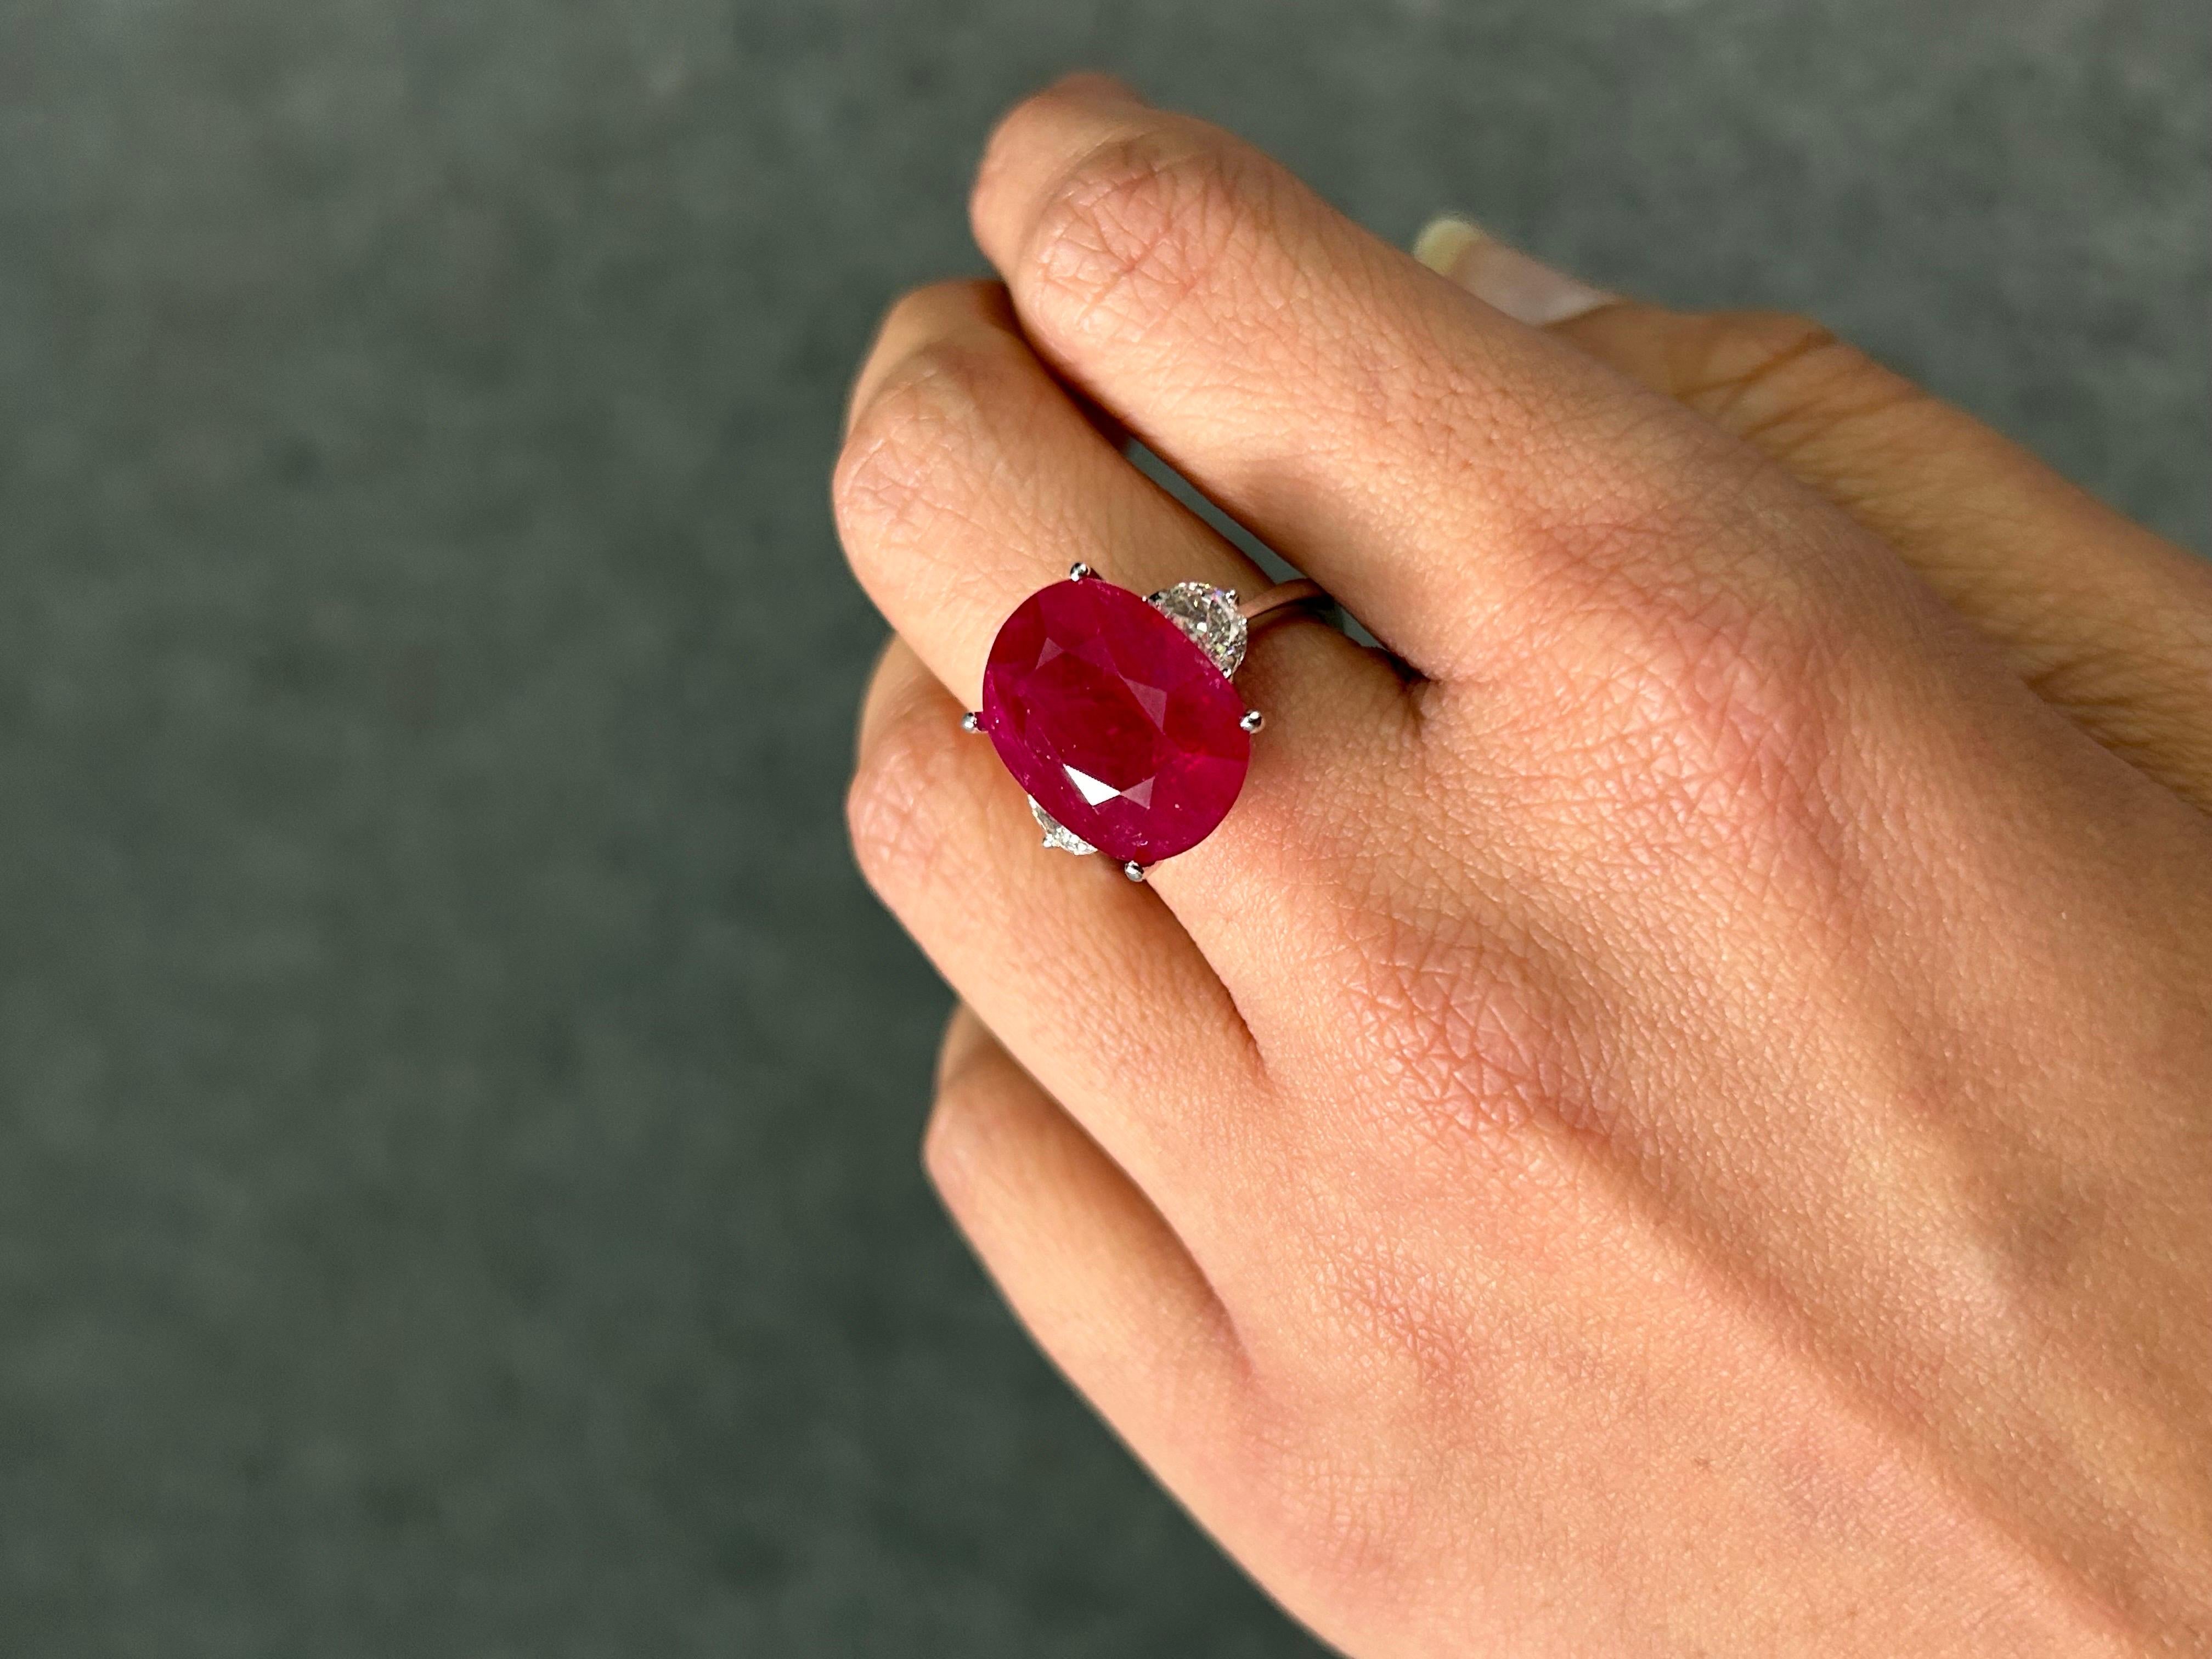 Eine Aussage 12,68 zertifiziert Burma Ruby Ring,  geschmückt mit weißen Halbmond-Diamanten in VS-Qualität, die alle in massivem 18-karätigem Weißgold gefasst sind. Derzeit in Größe US 7, kann in der Größe geändert werden. 
Für weitere Informationen